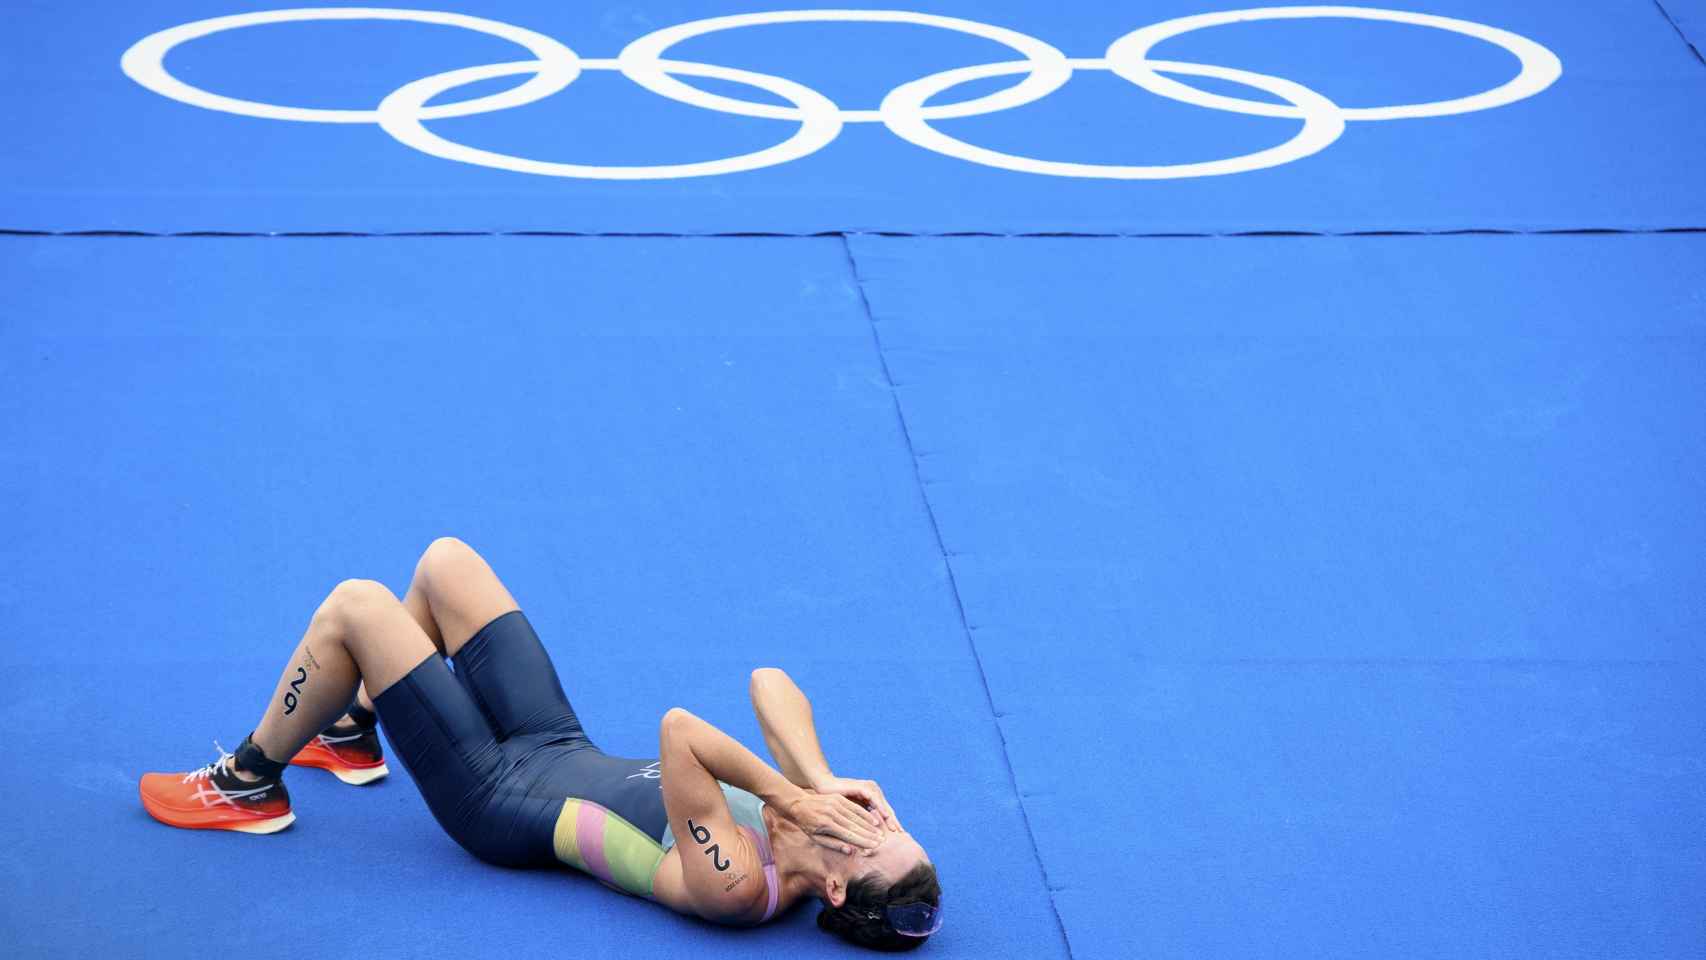 La triatleta Flora Duffy junto a los aros olímpicos